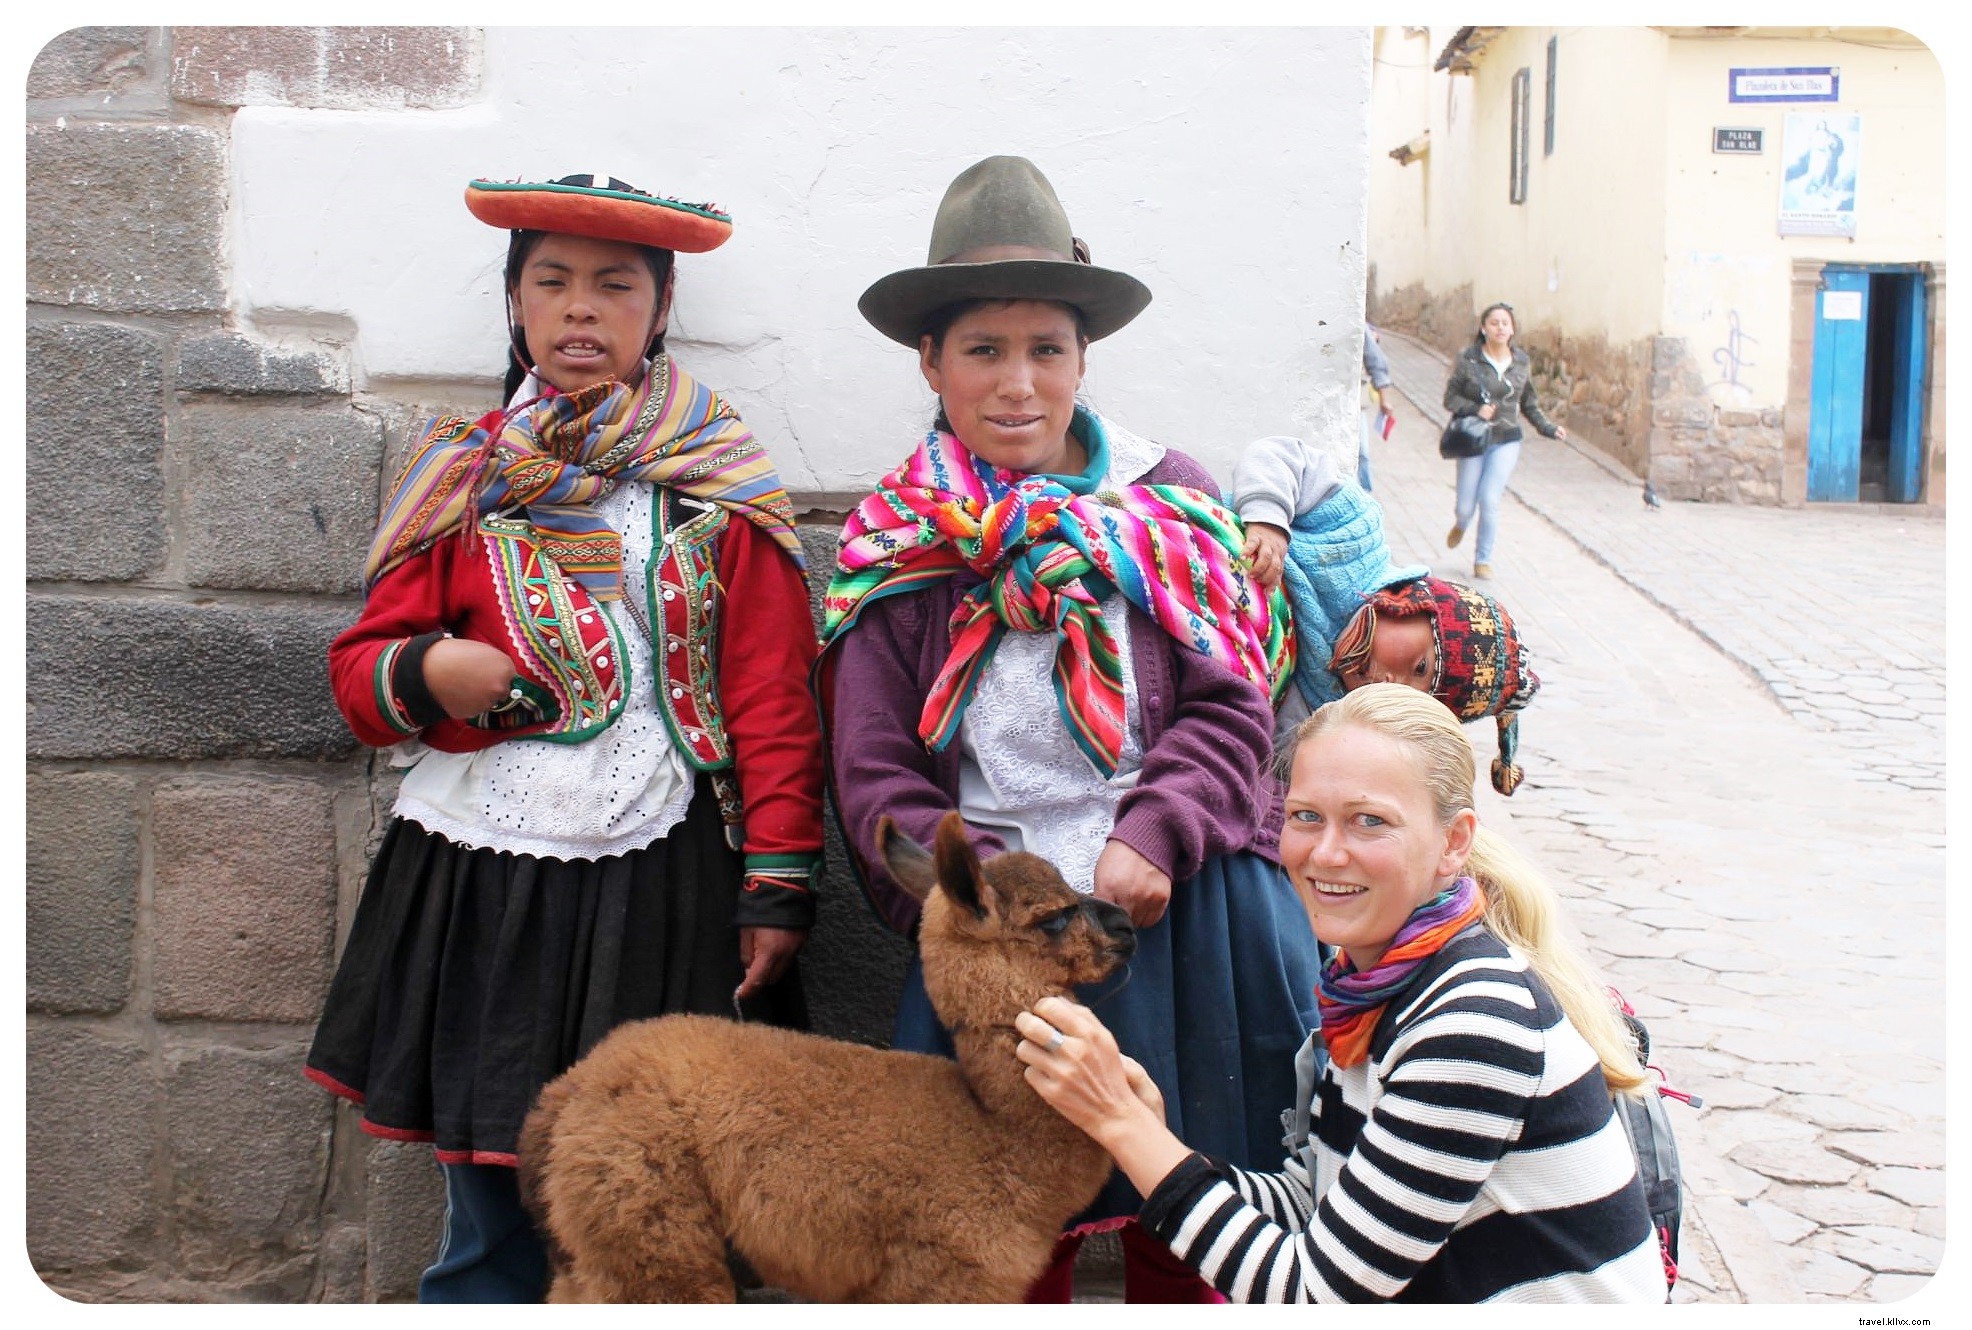 Peru On A Plate:Menangkan Perjalanan Kuliner 9 Hari Ke Peru Untuk Dua Orang